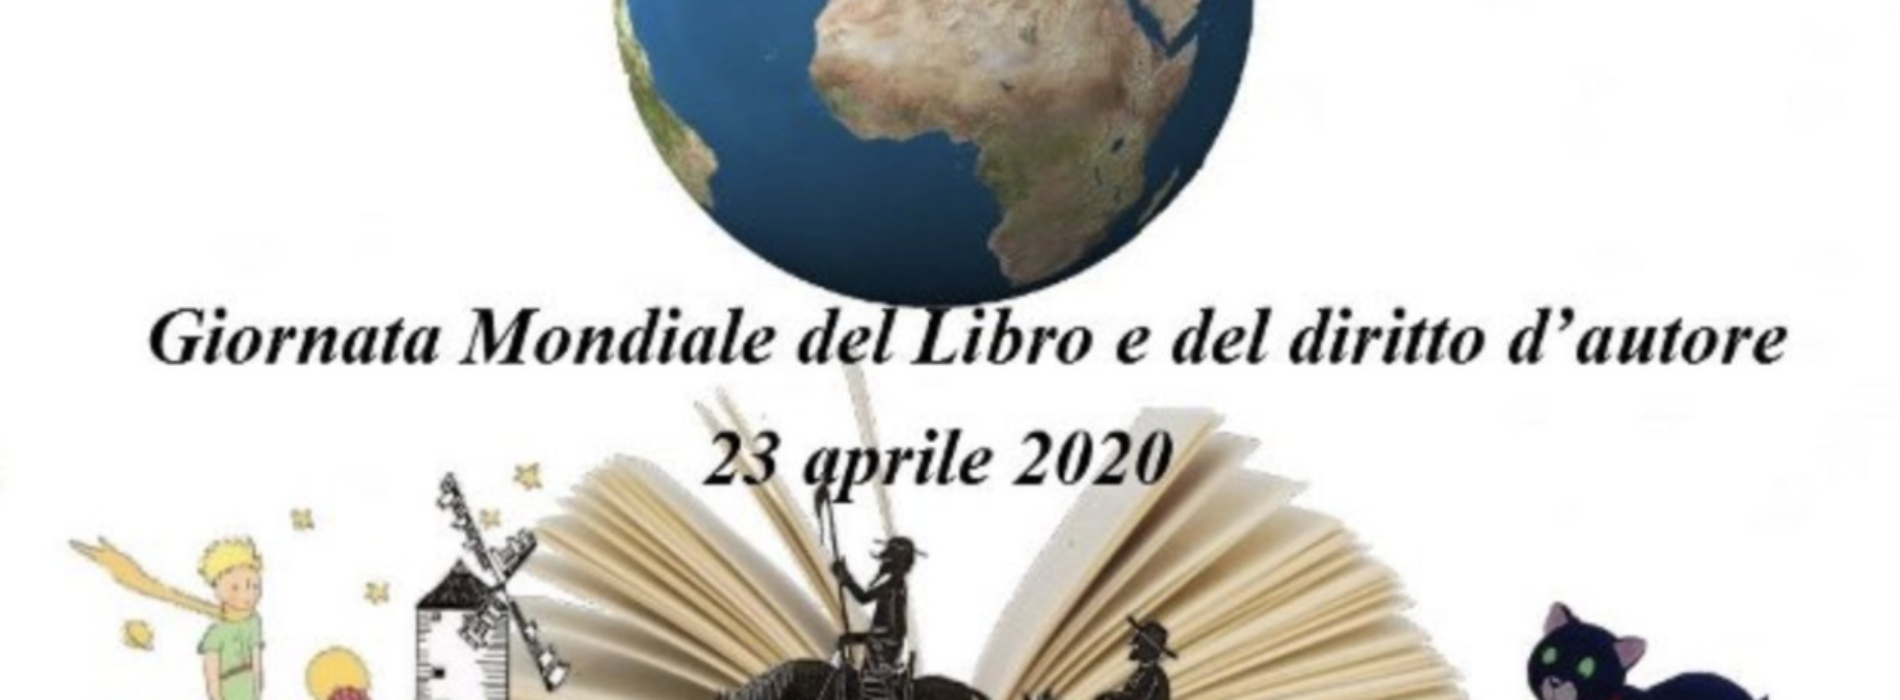 Giornata Mondiale del Libro. La maratona di lettura è online